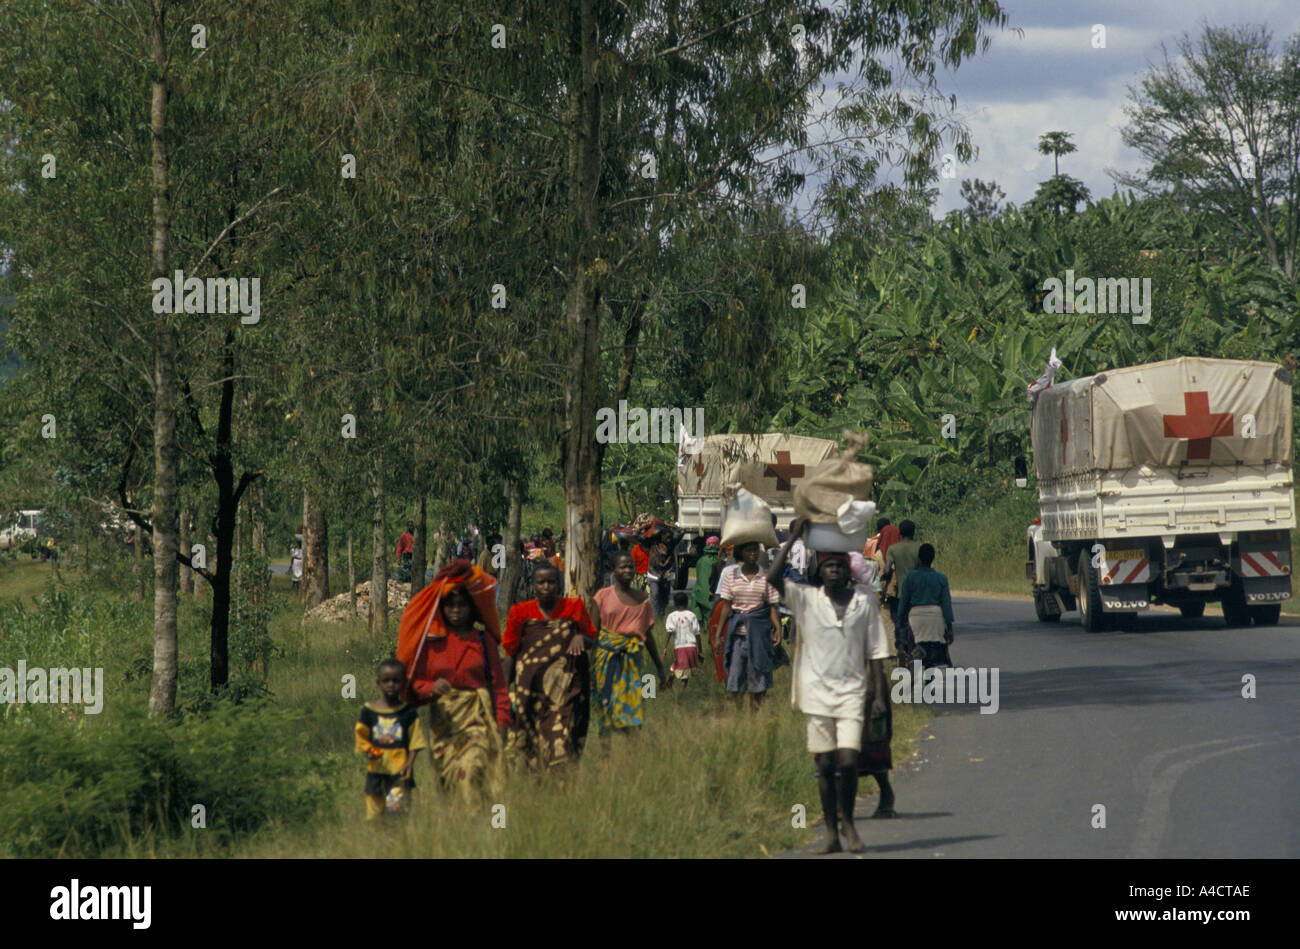 "La guerre civile rwandaise", CROIX ROUGE INTERNATIONALE réunissant en convoi de fournitures médicales à Kigali s'APPROCHE DE LA VILLE ET LES RÉFUGIÉS FUIENT DANS LA DIRECTION opposée. avril 1994 Banque D'Images